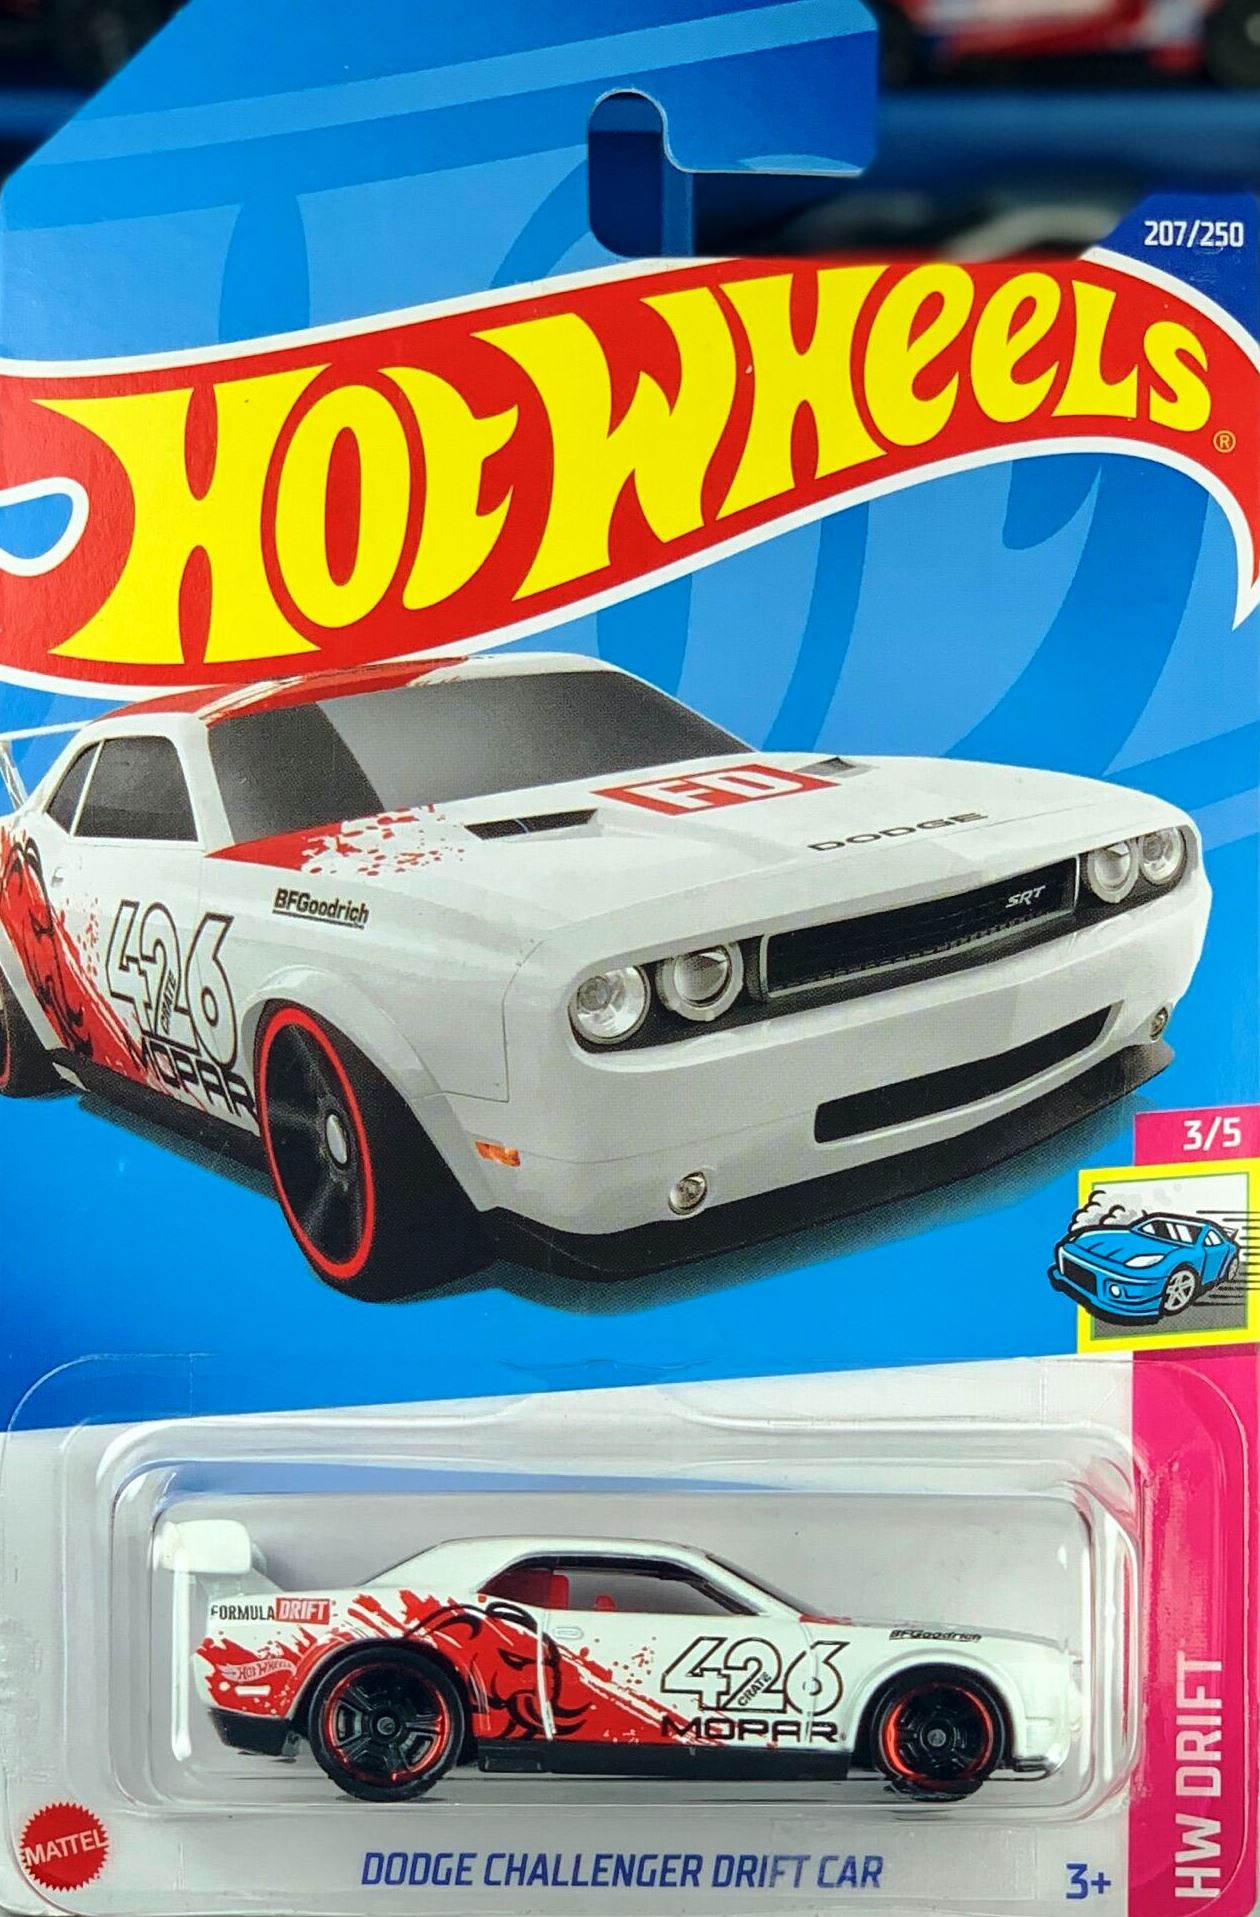 Hotwheels- Dodge Challenger Drift car